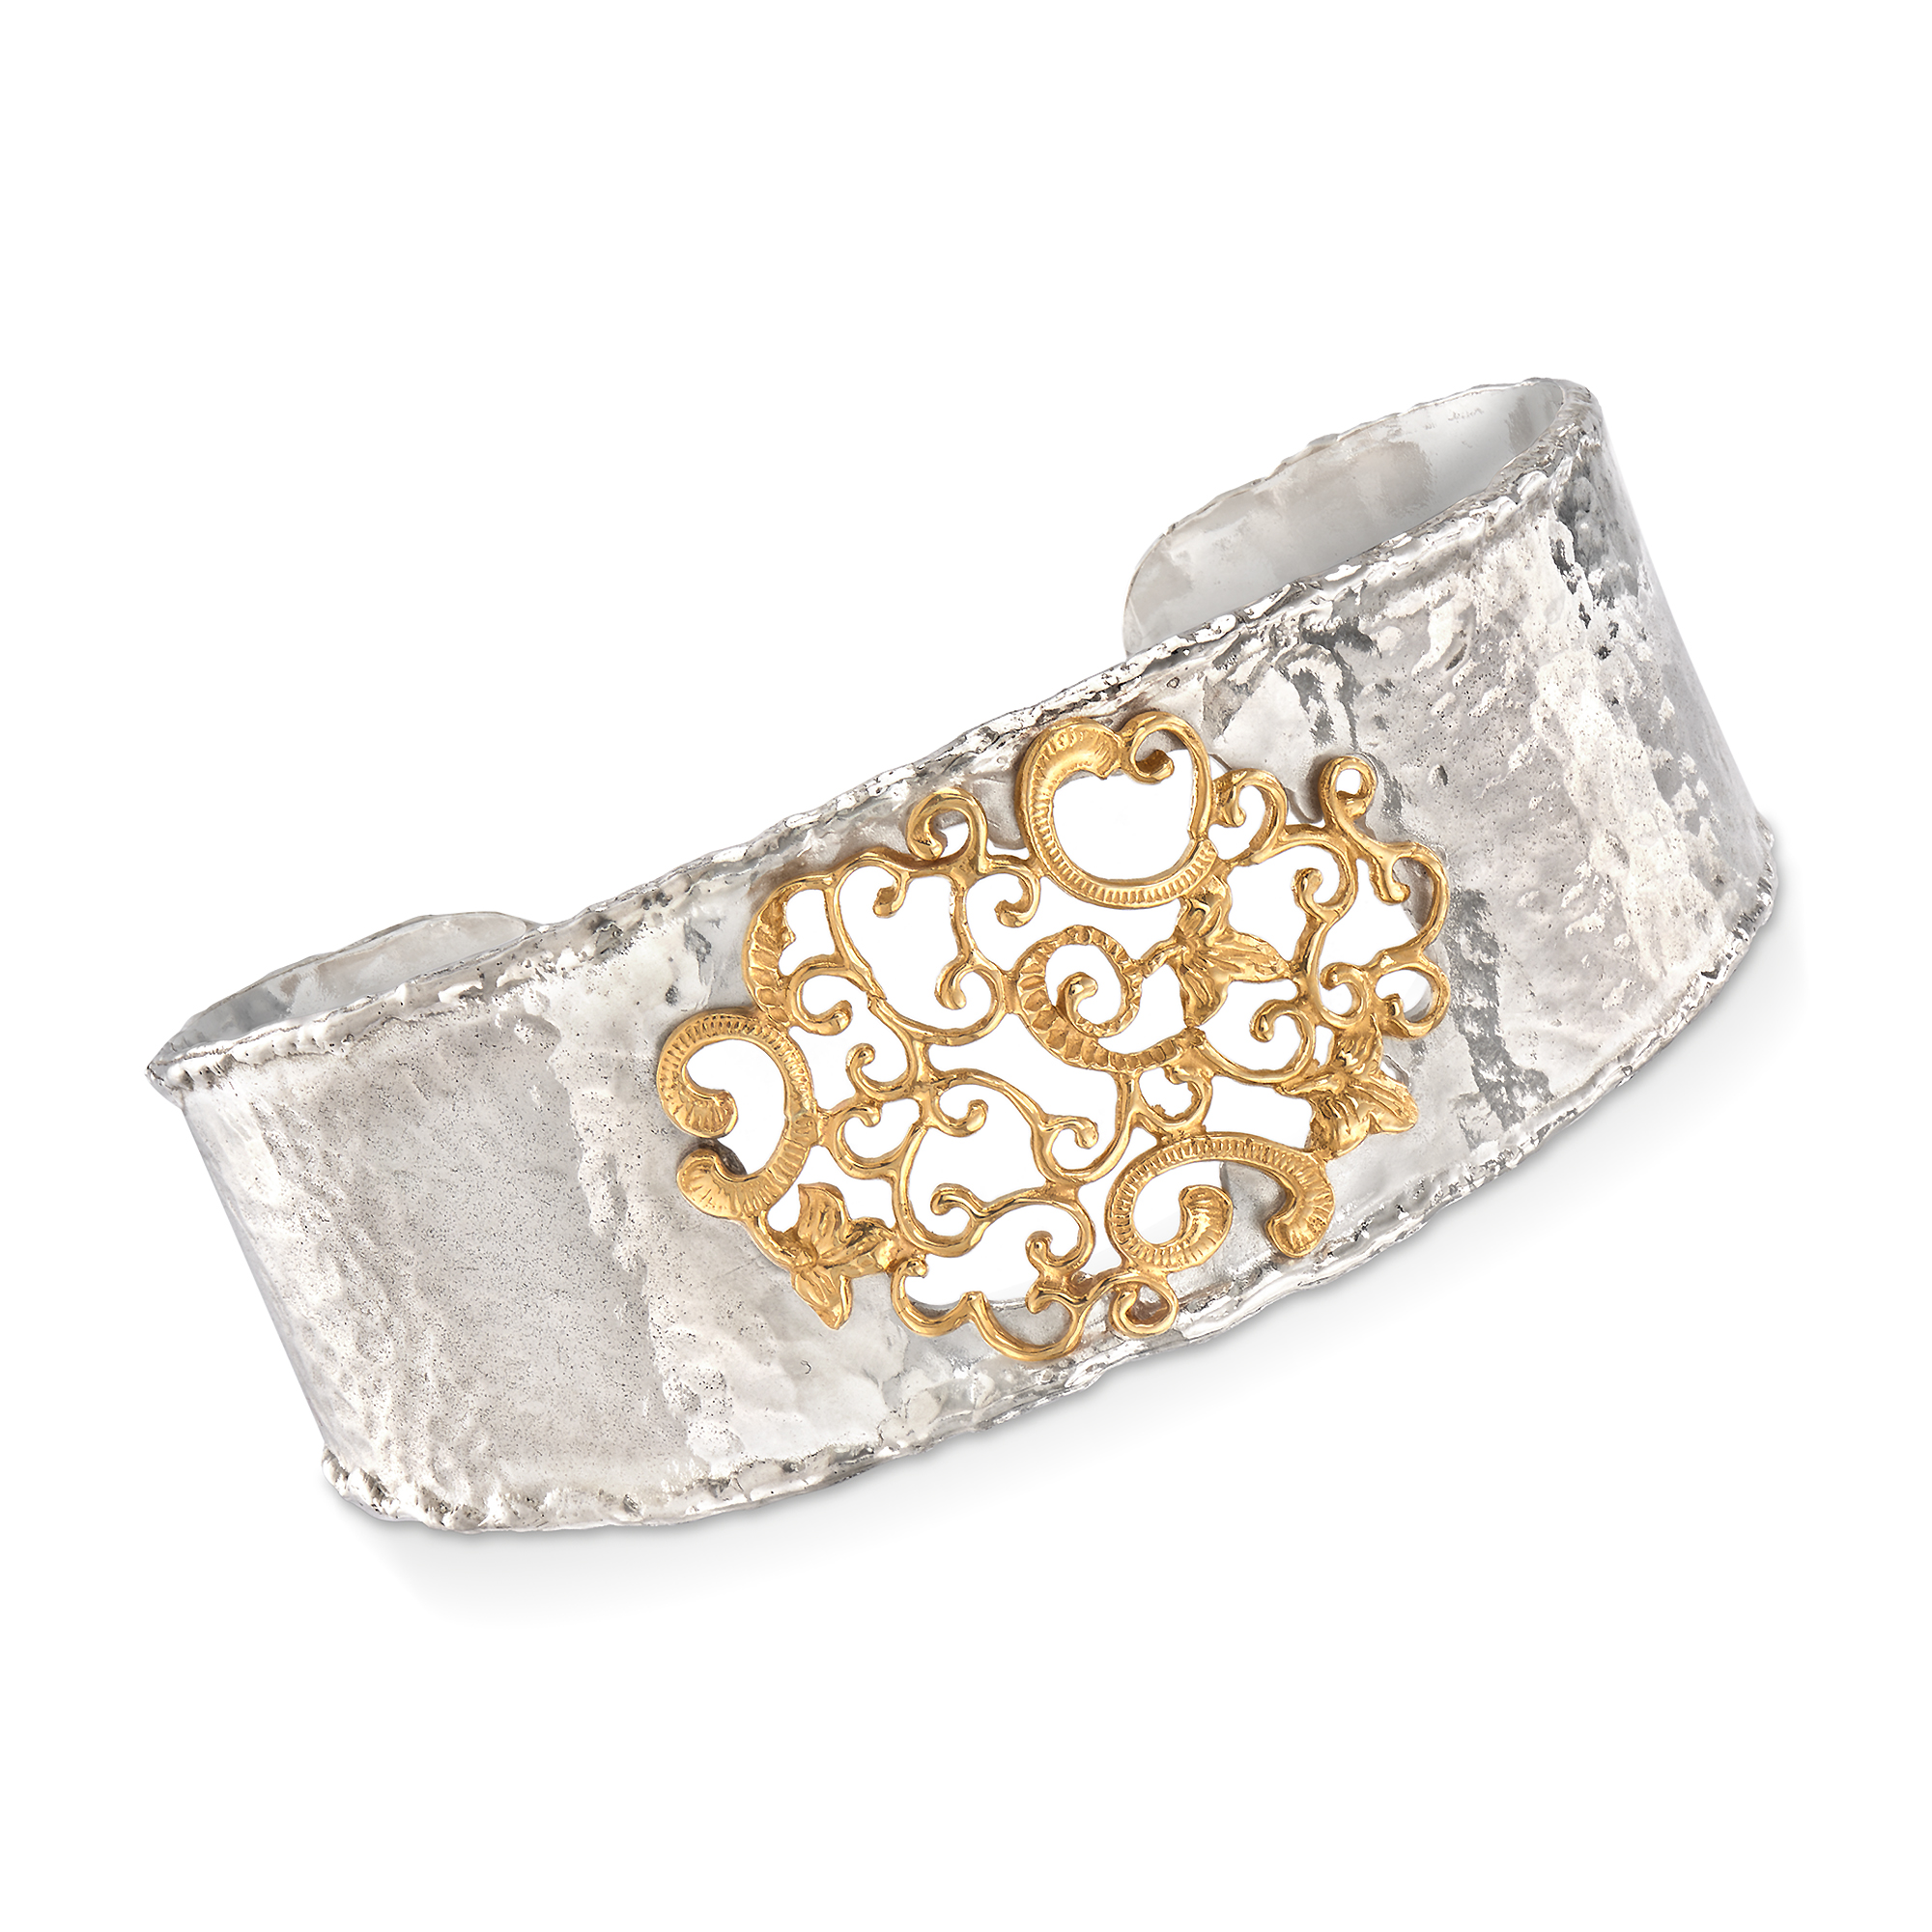 Candice Gold Cuff Bracelet in Silver Filigree